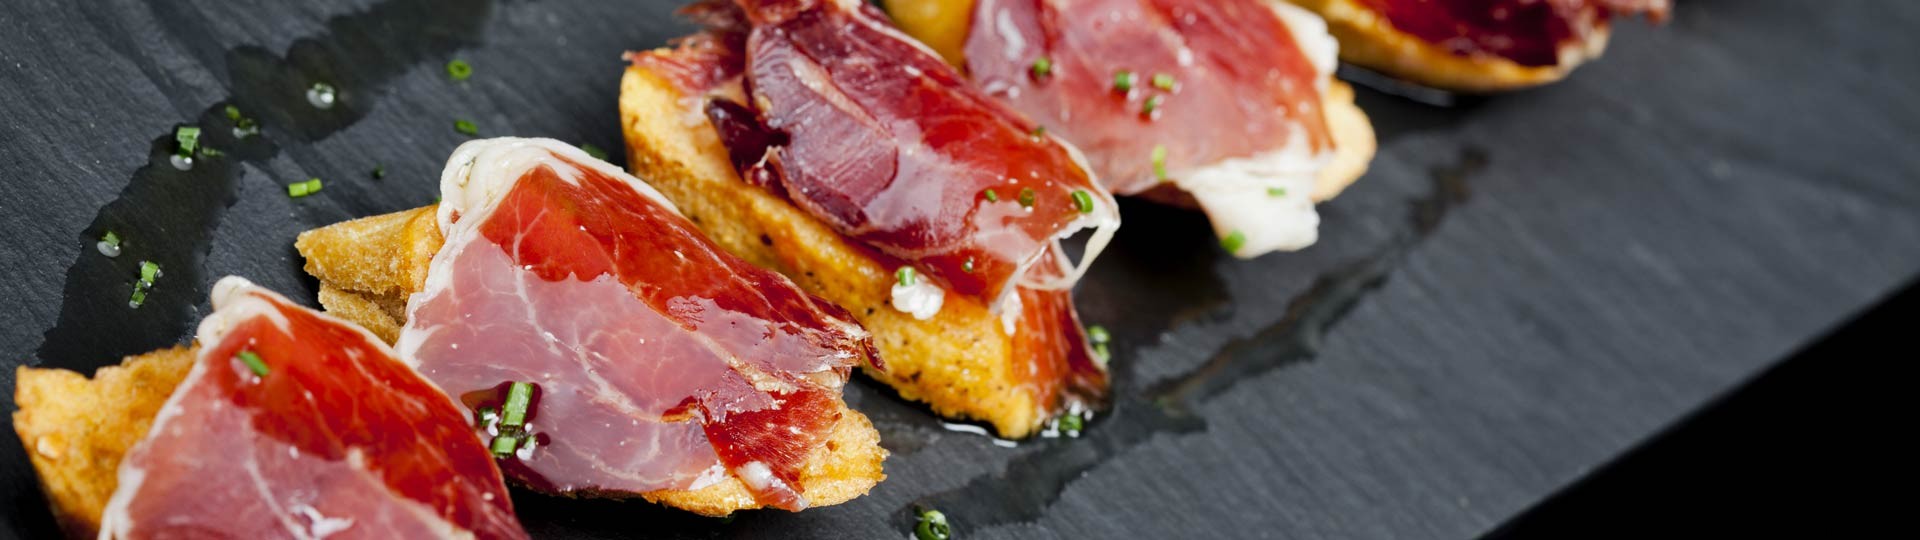 Foodies, prepare-se para se entusiasmar:12 dos melhores bairros de bares de tapas da Espanha 